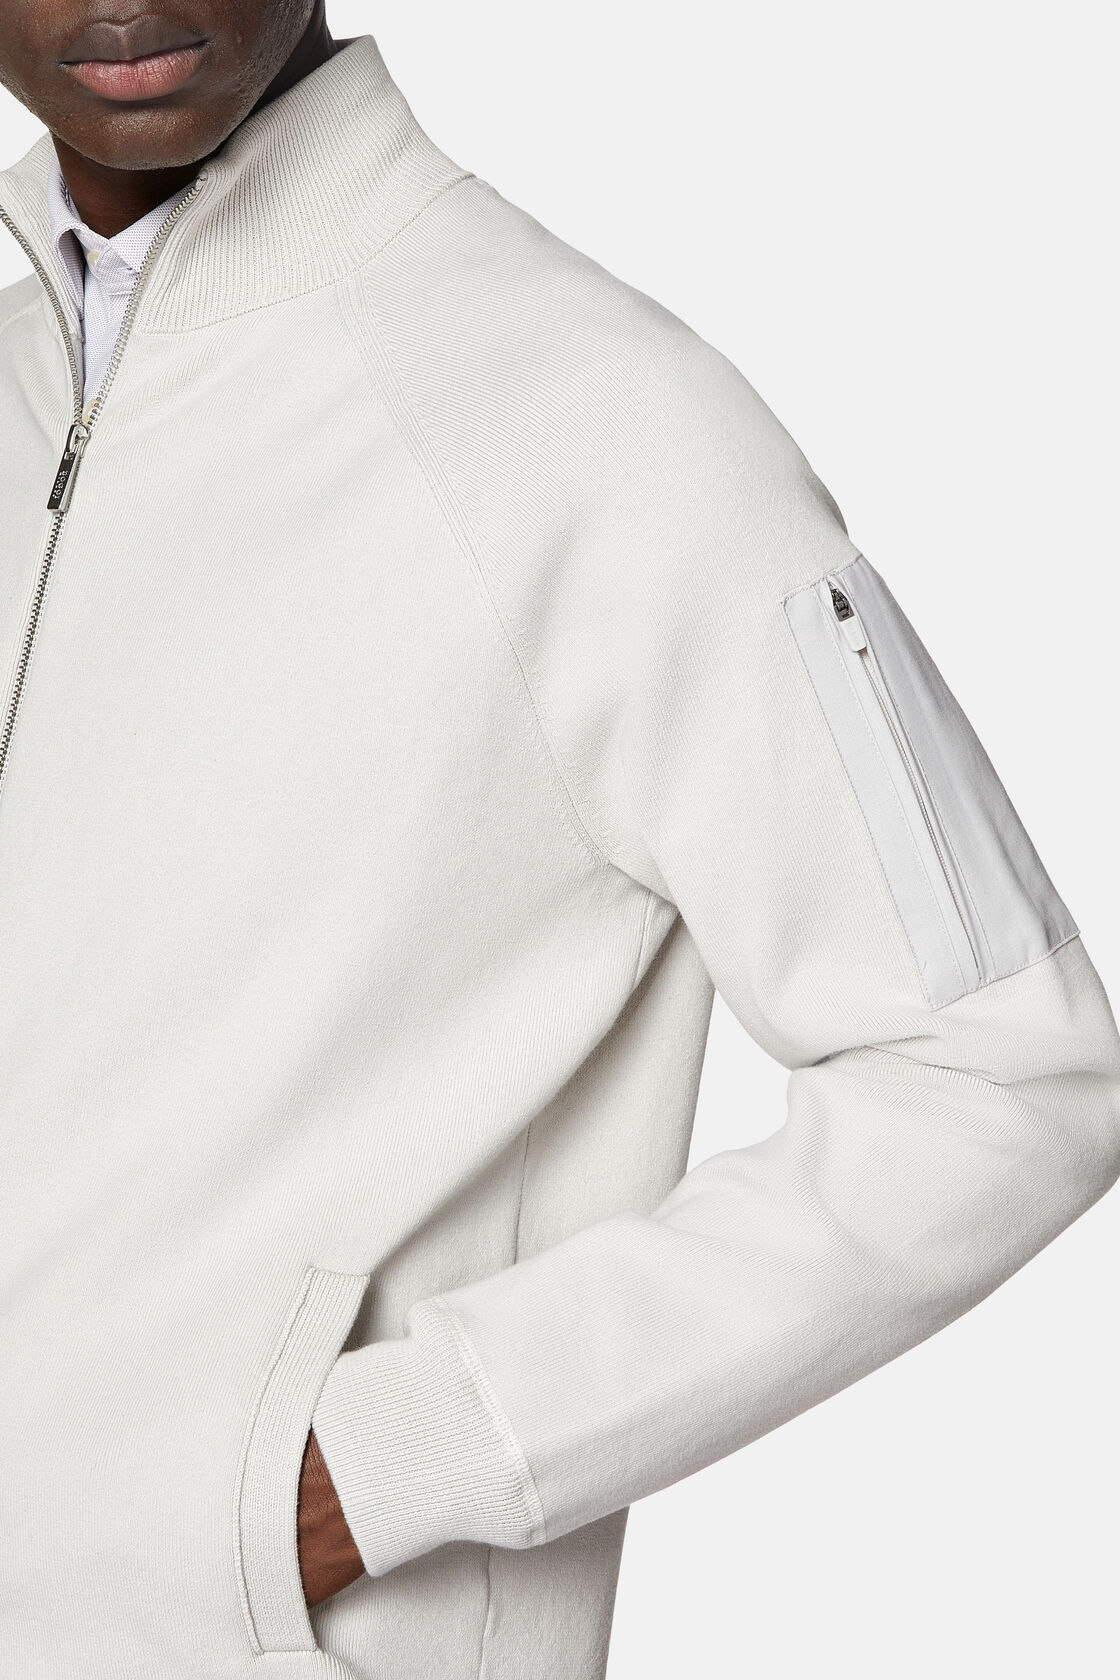 Sweat-Shirt Gris Full Zip En Maille En Coton Technique, Light grey, hi-res